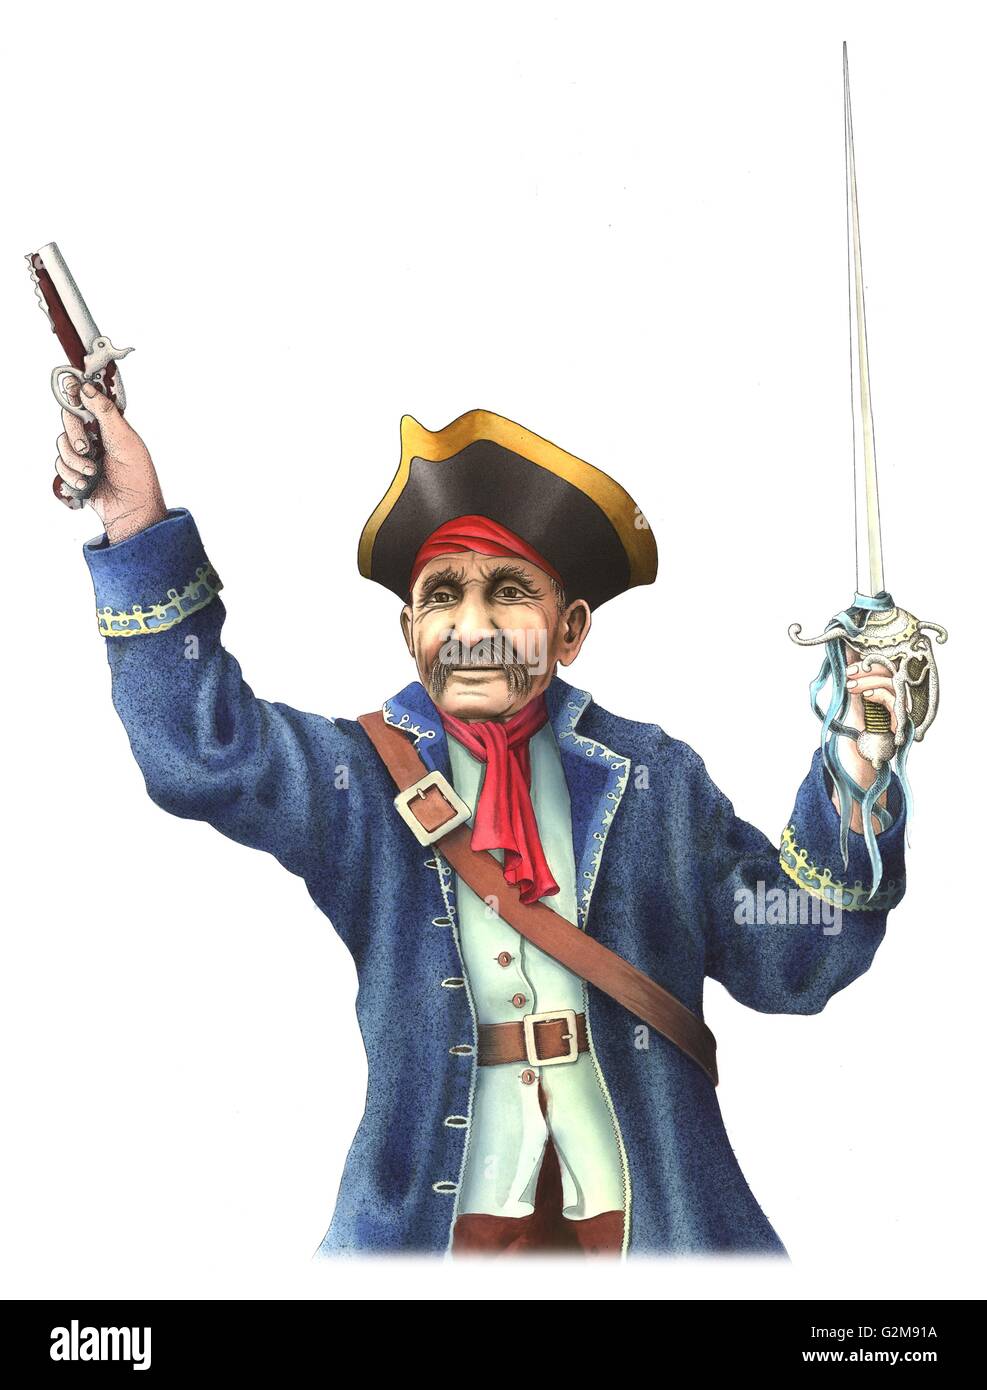 Celebración pirata pistola y espada Foto de stock